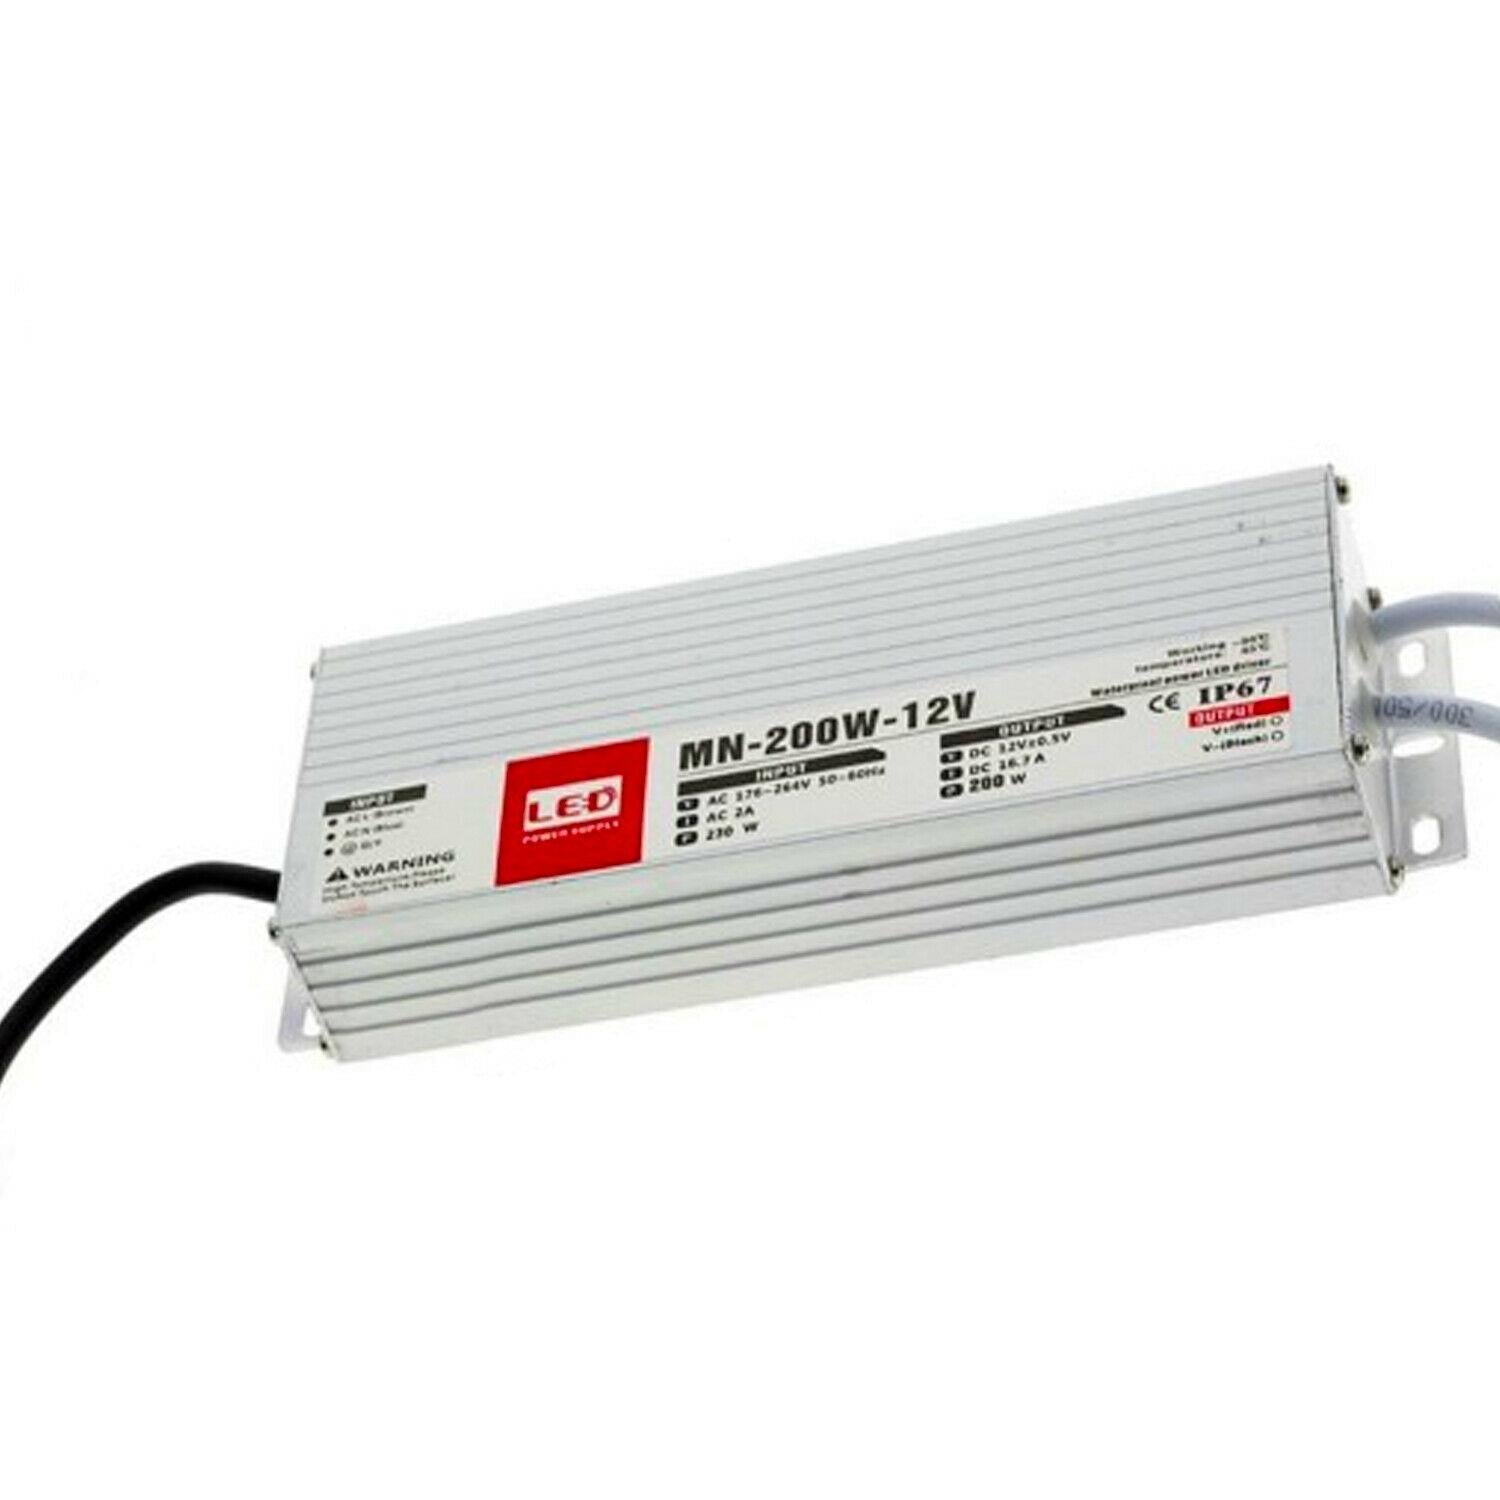 Slim 12V DC 60W/100W/150W/200W Low Voltage LED Driver Transformer Power Supply~1432